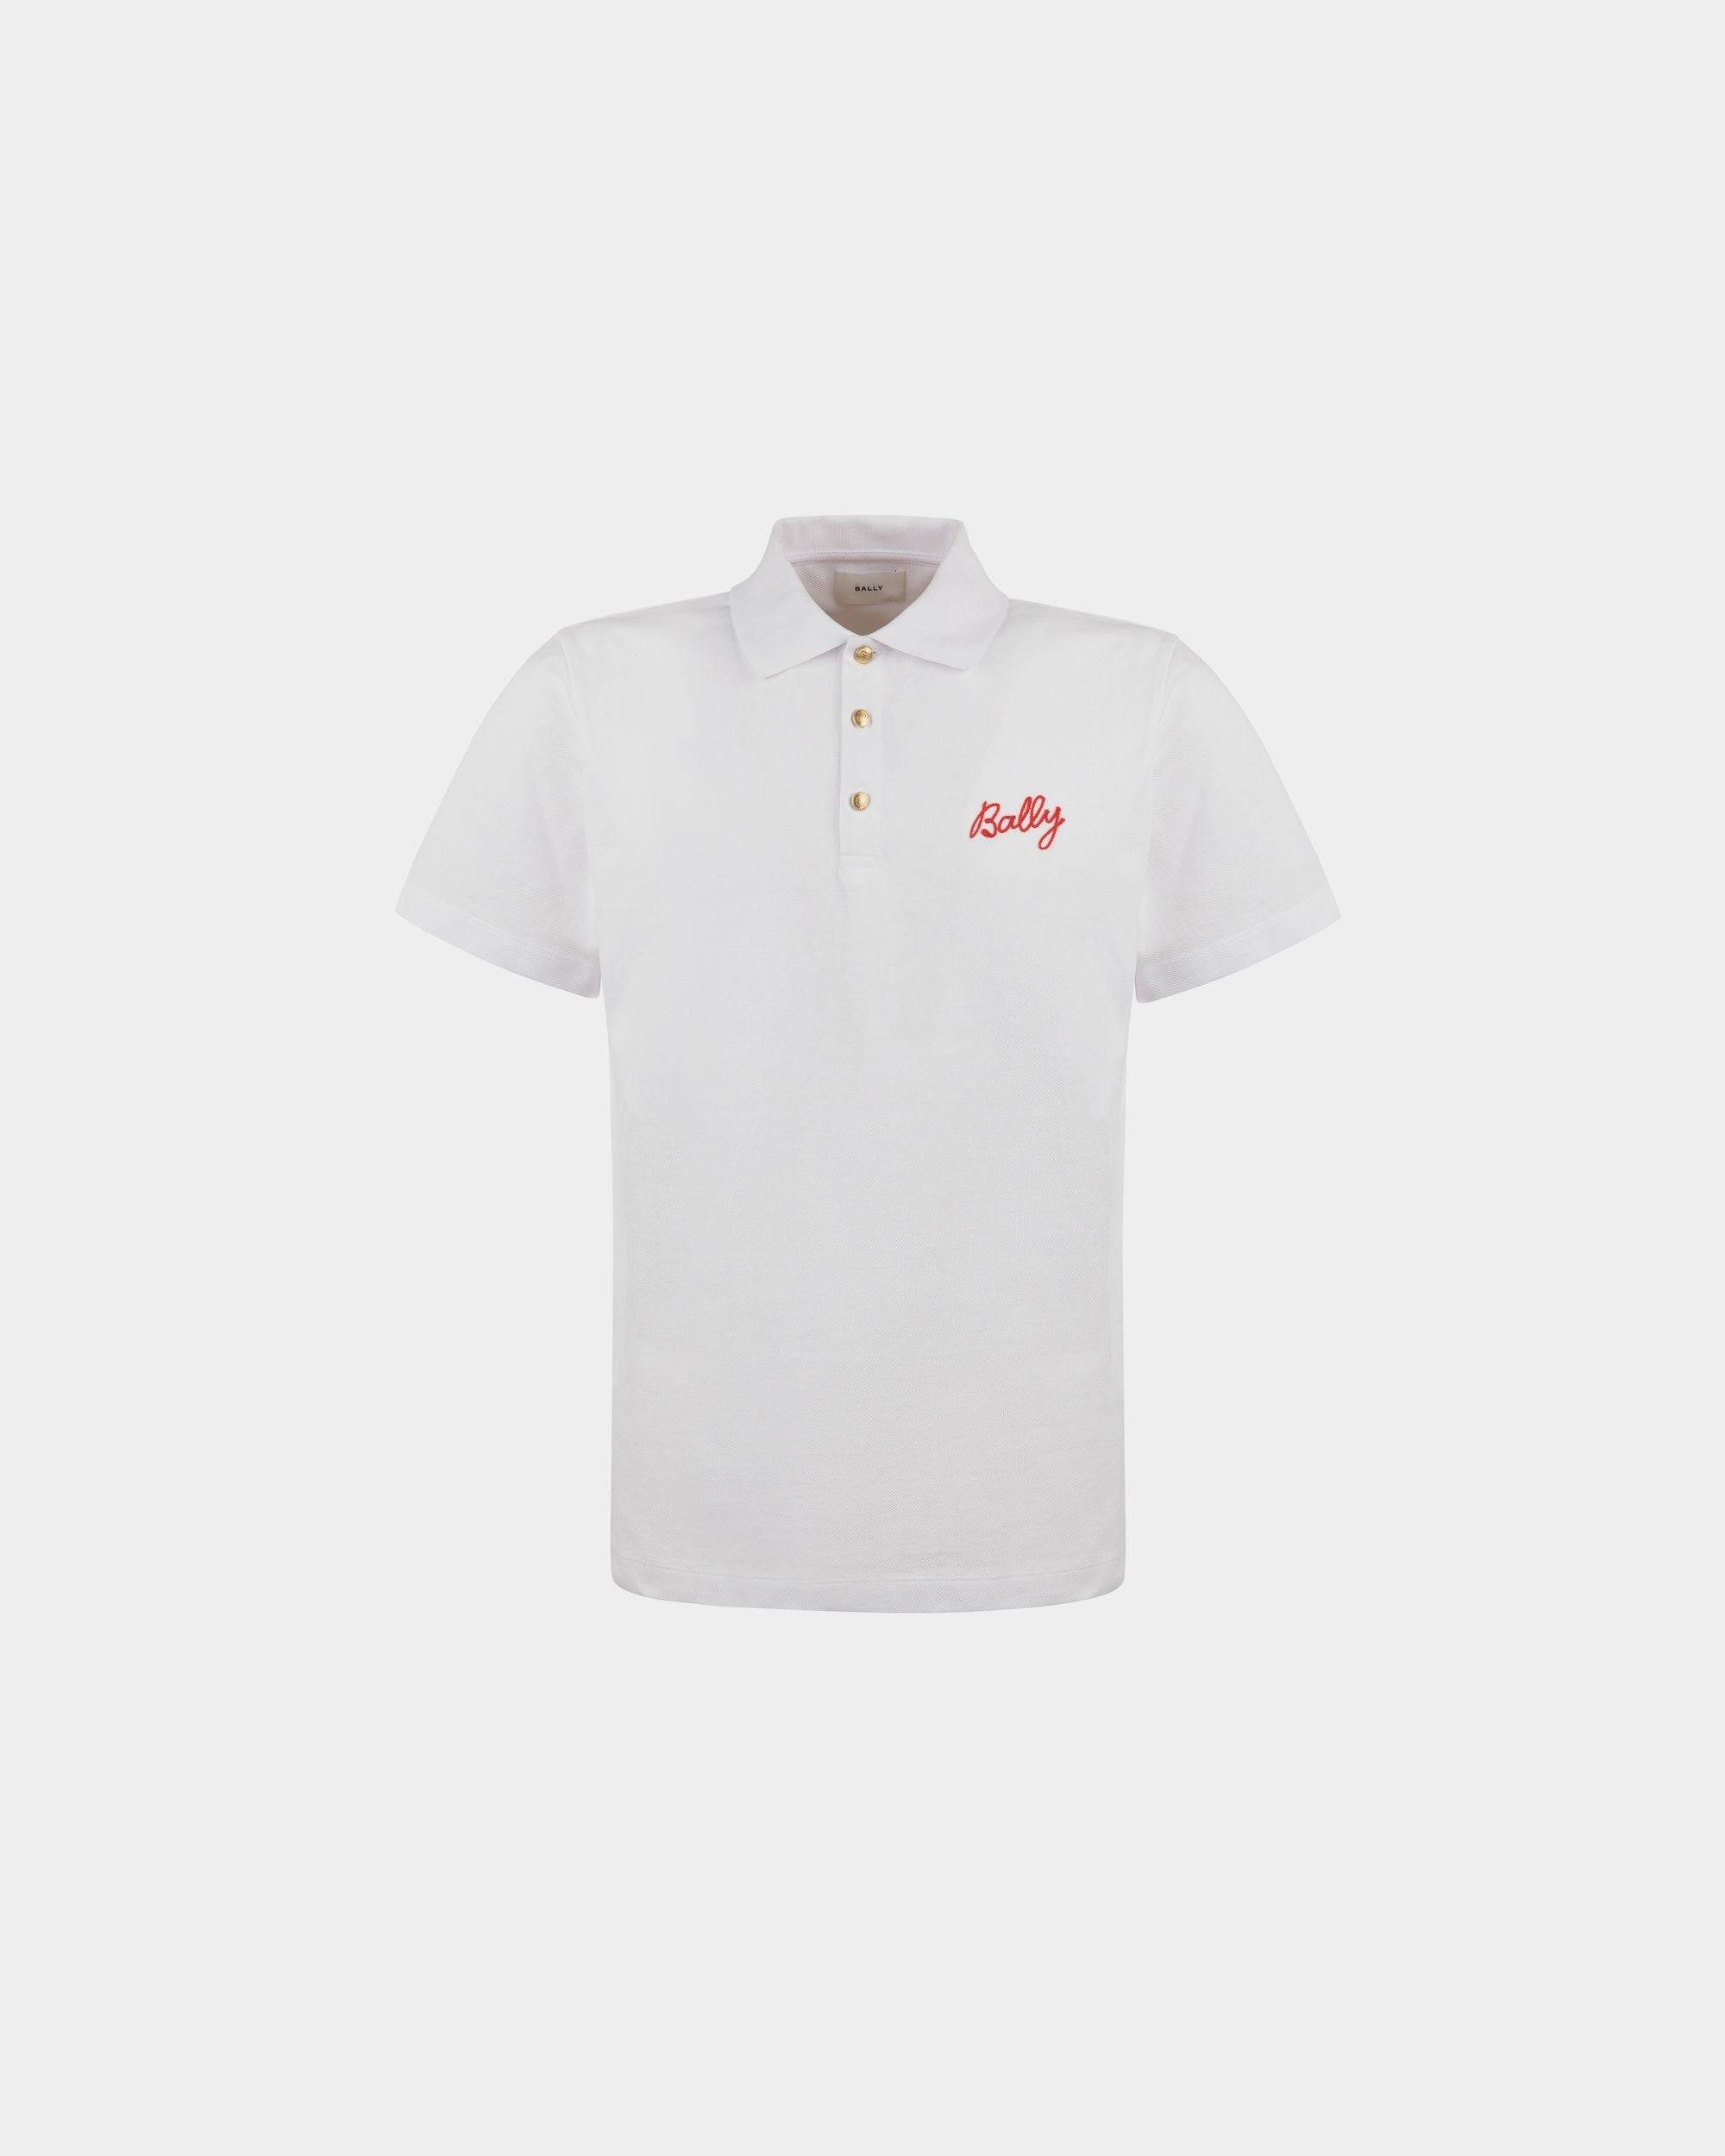 Poloshirt für Herren aus weißer Baumwolle | Bally | Still Life Vorderseite